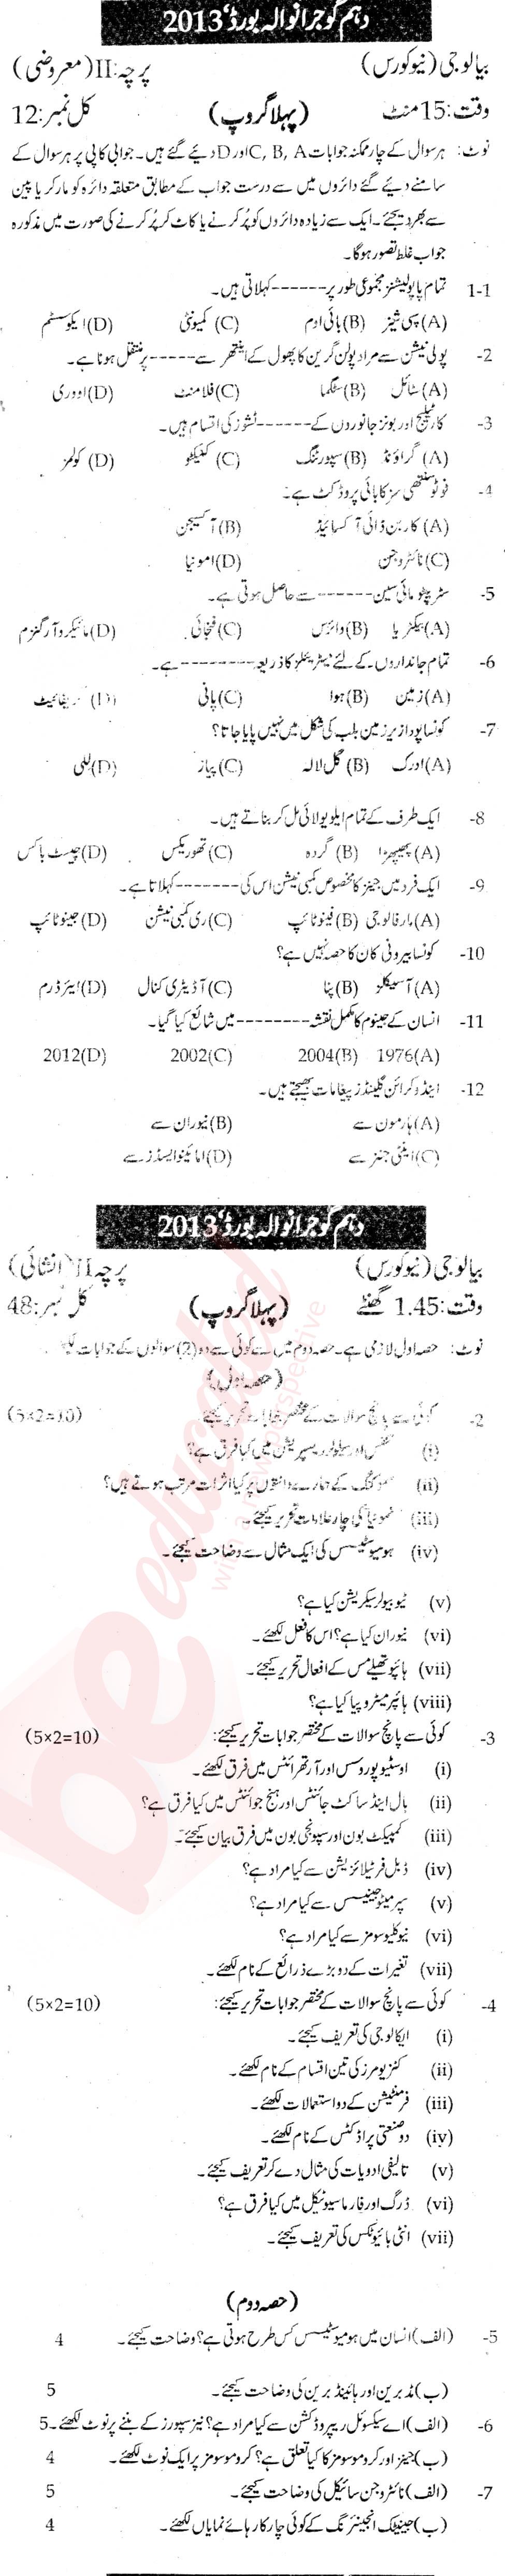 Biology 10th Urdu Medium Past Paper Group 1 BISE Gujranwala 2013